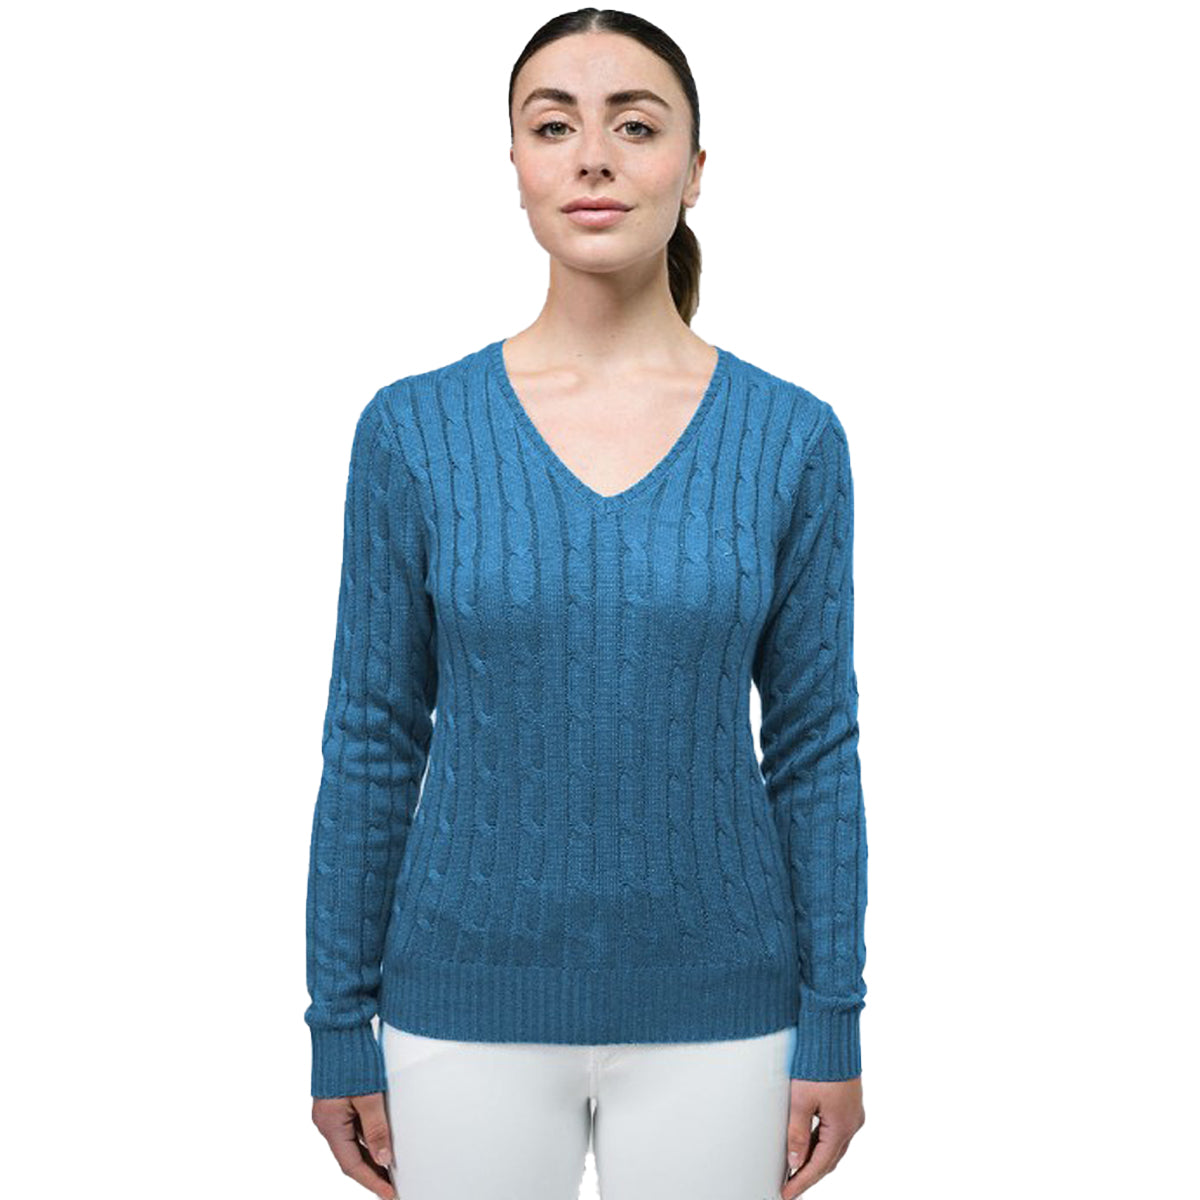 Samshield Women's Lisa Twisted Sweater